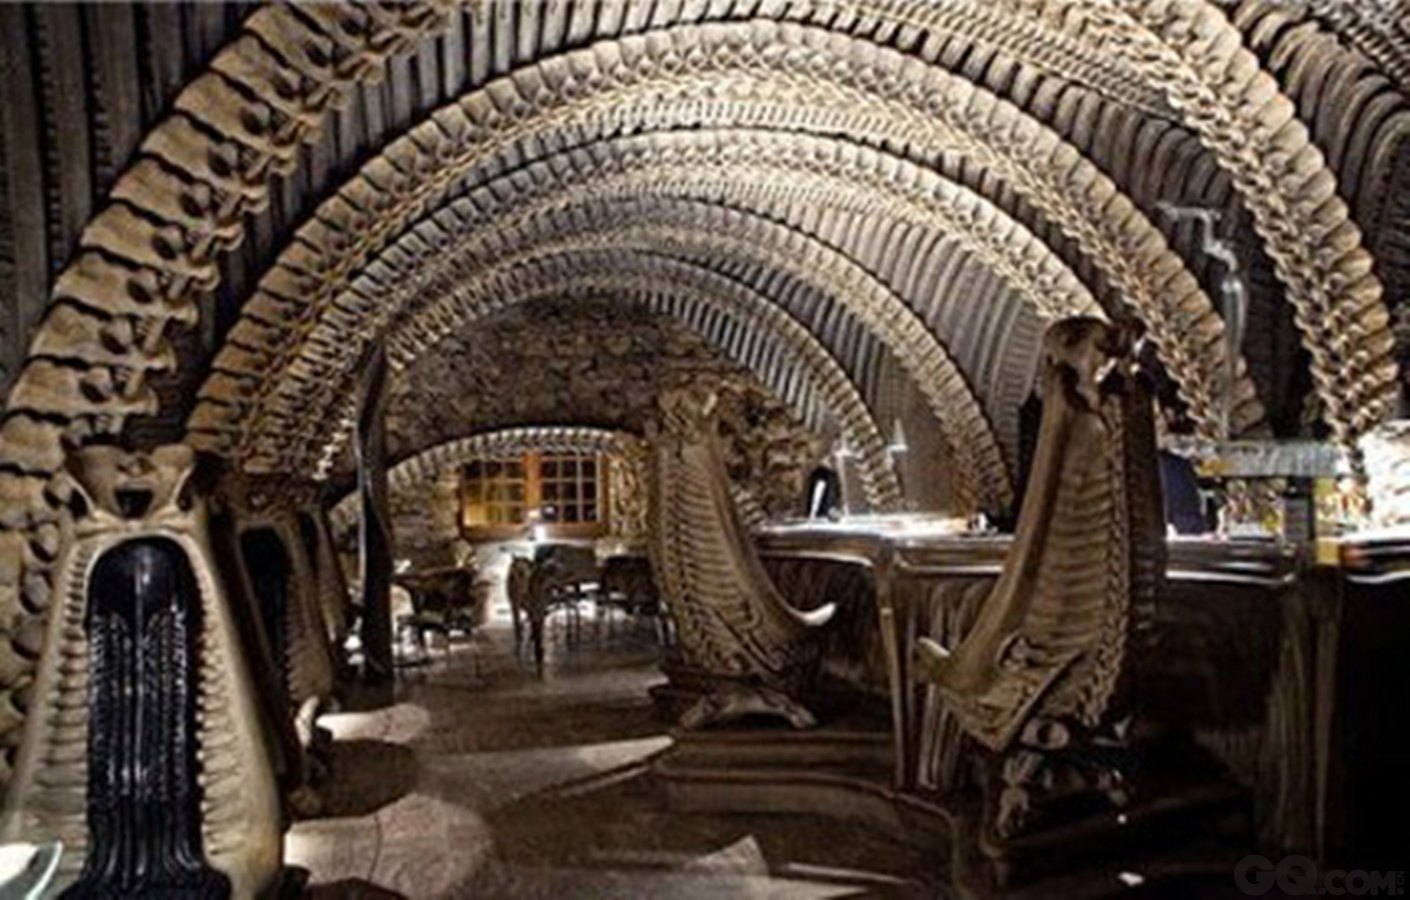 这家位于瑞士的连锁餐厅是为了向瑞士著名画家、雕塑家和布景师致敬的，以电影《外星人》为基础，设计出艺术感和视觉效果。